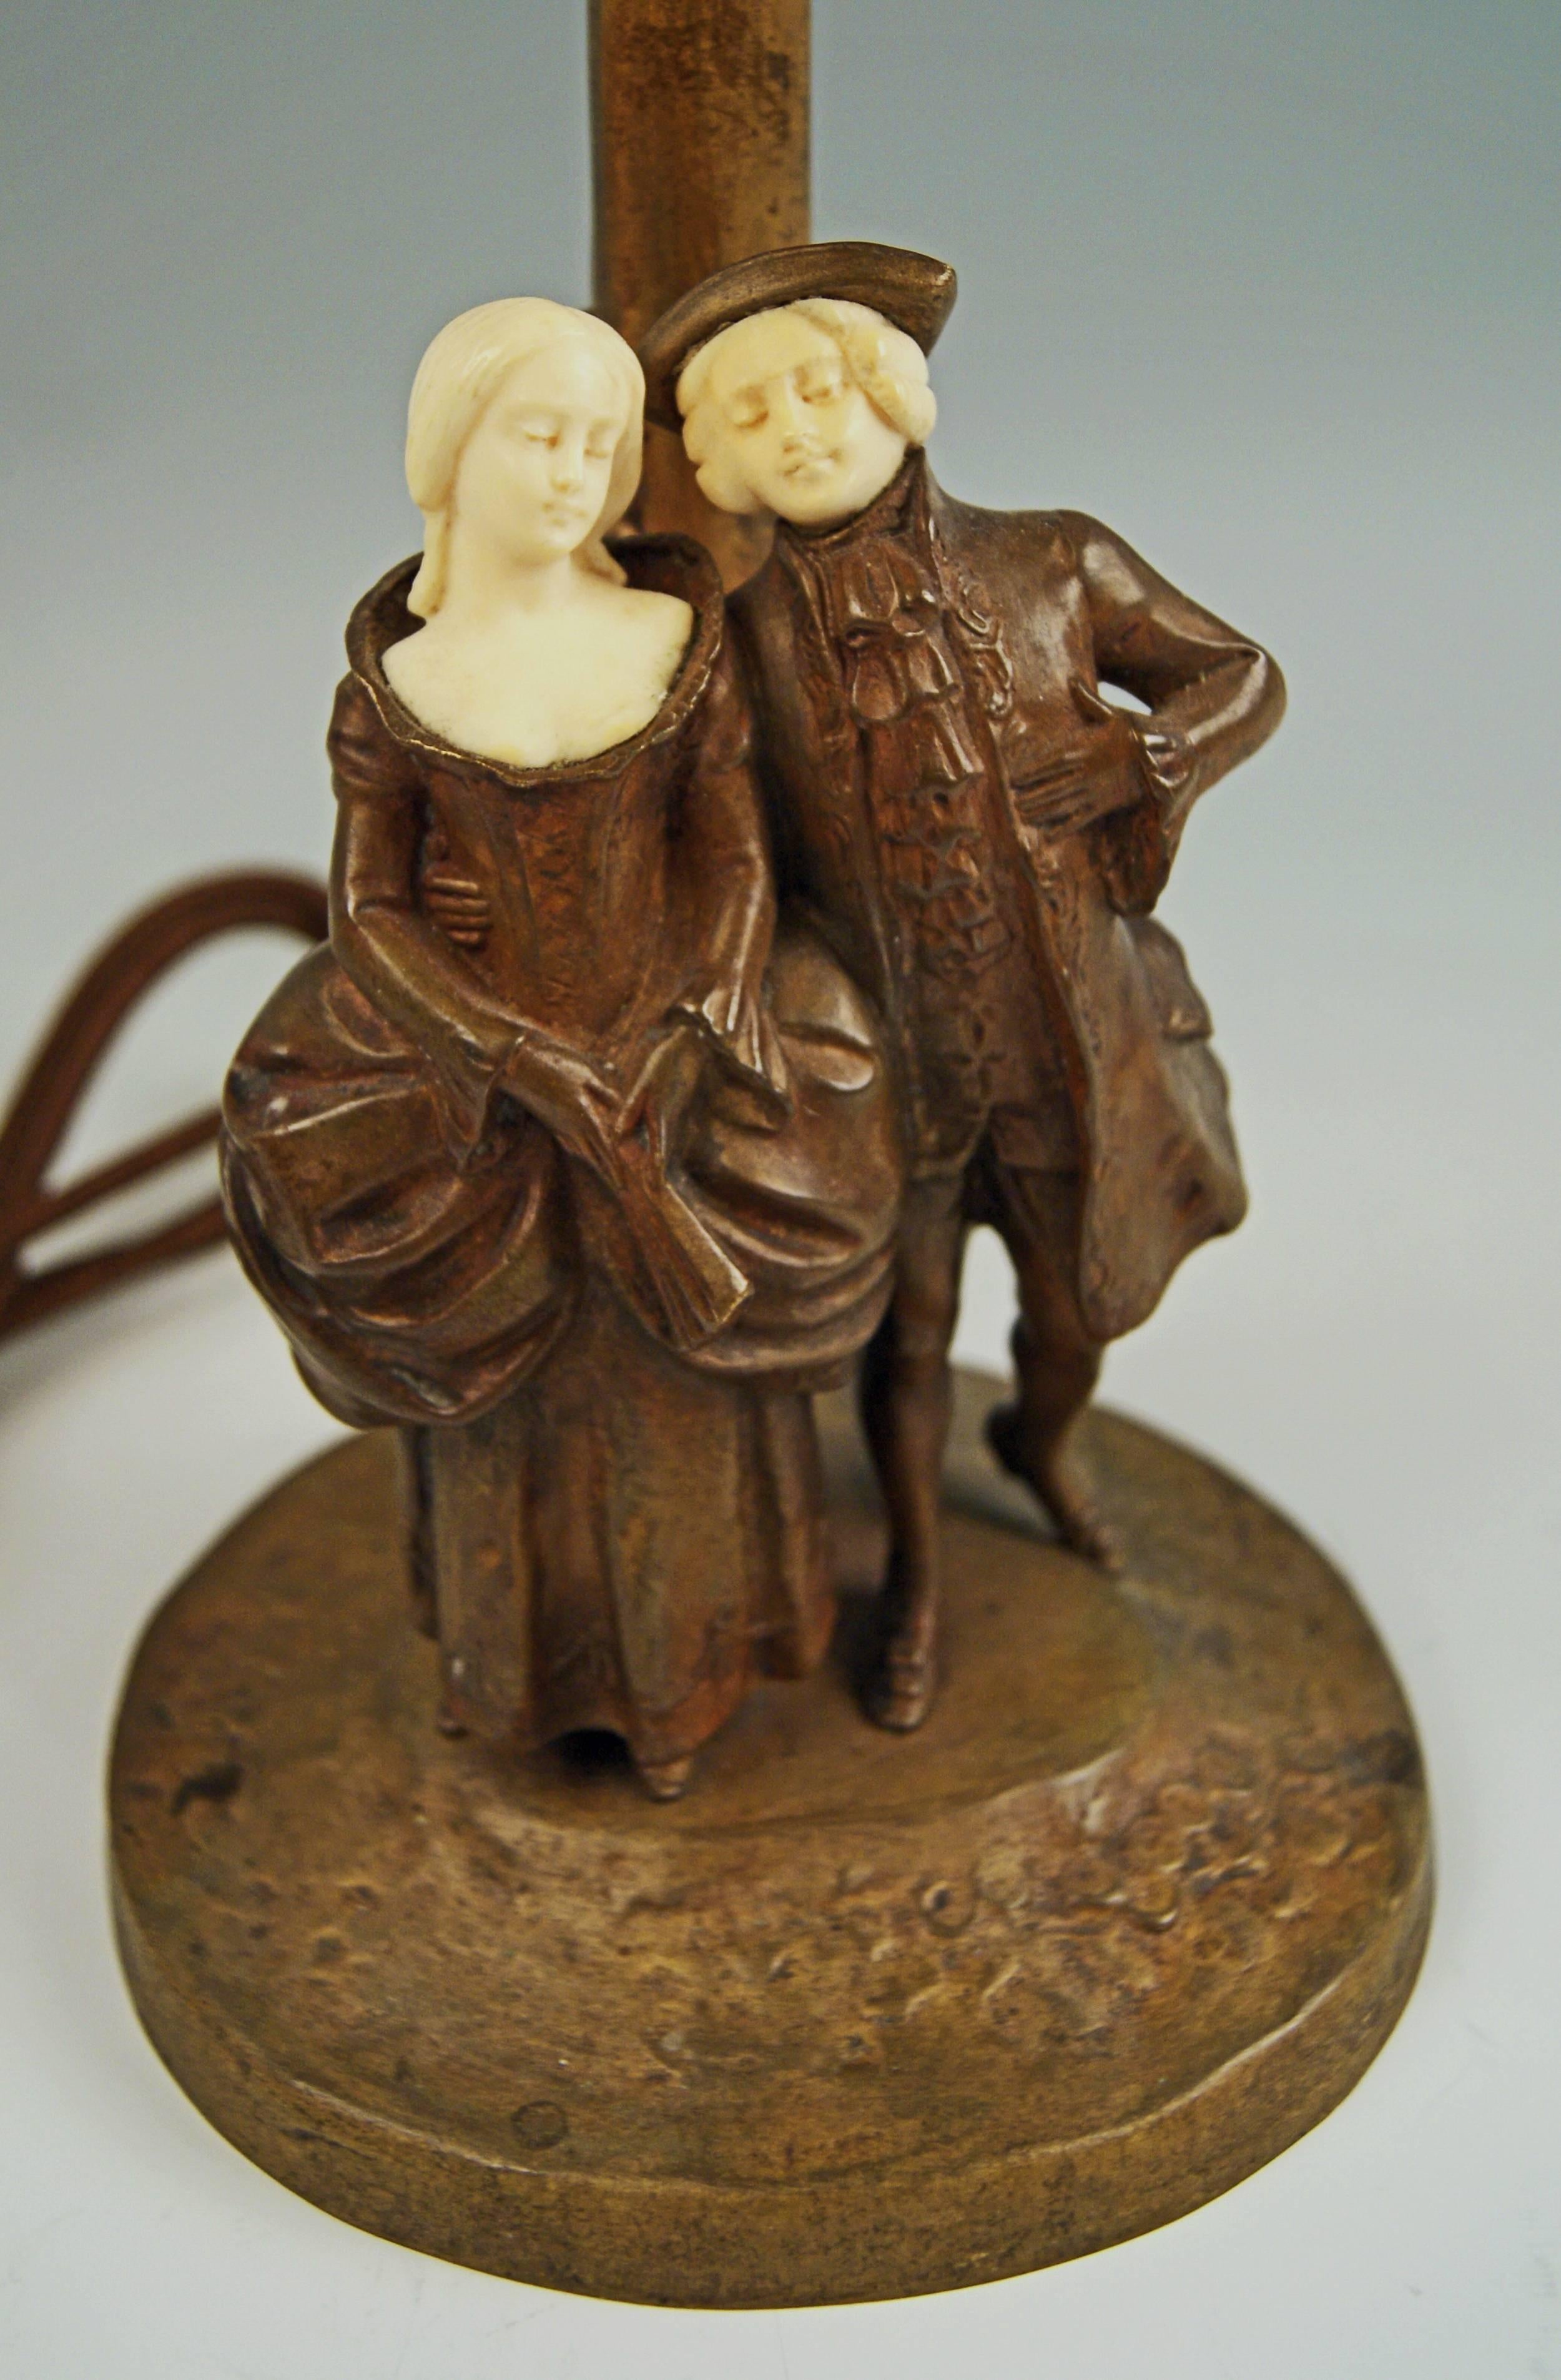 Wunderschöne Wiener Bronze-Tischlampe des berühmten Bronze-Bildhauers Peter Tereszczuk (1875 - 1963)
aus der Zeit um 1910-1915. 

Es sind zwei Skulpturen zu sehen: beide gehen:: wobei der Mann die Hüfte der Frau umarmt. 
Das Paar ist im eleganten